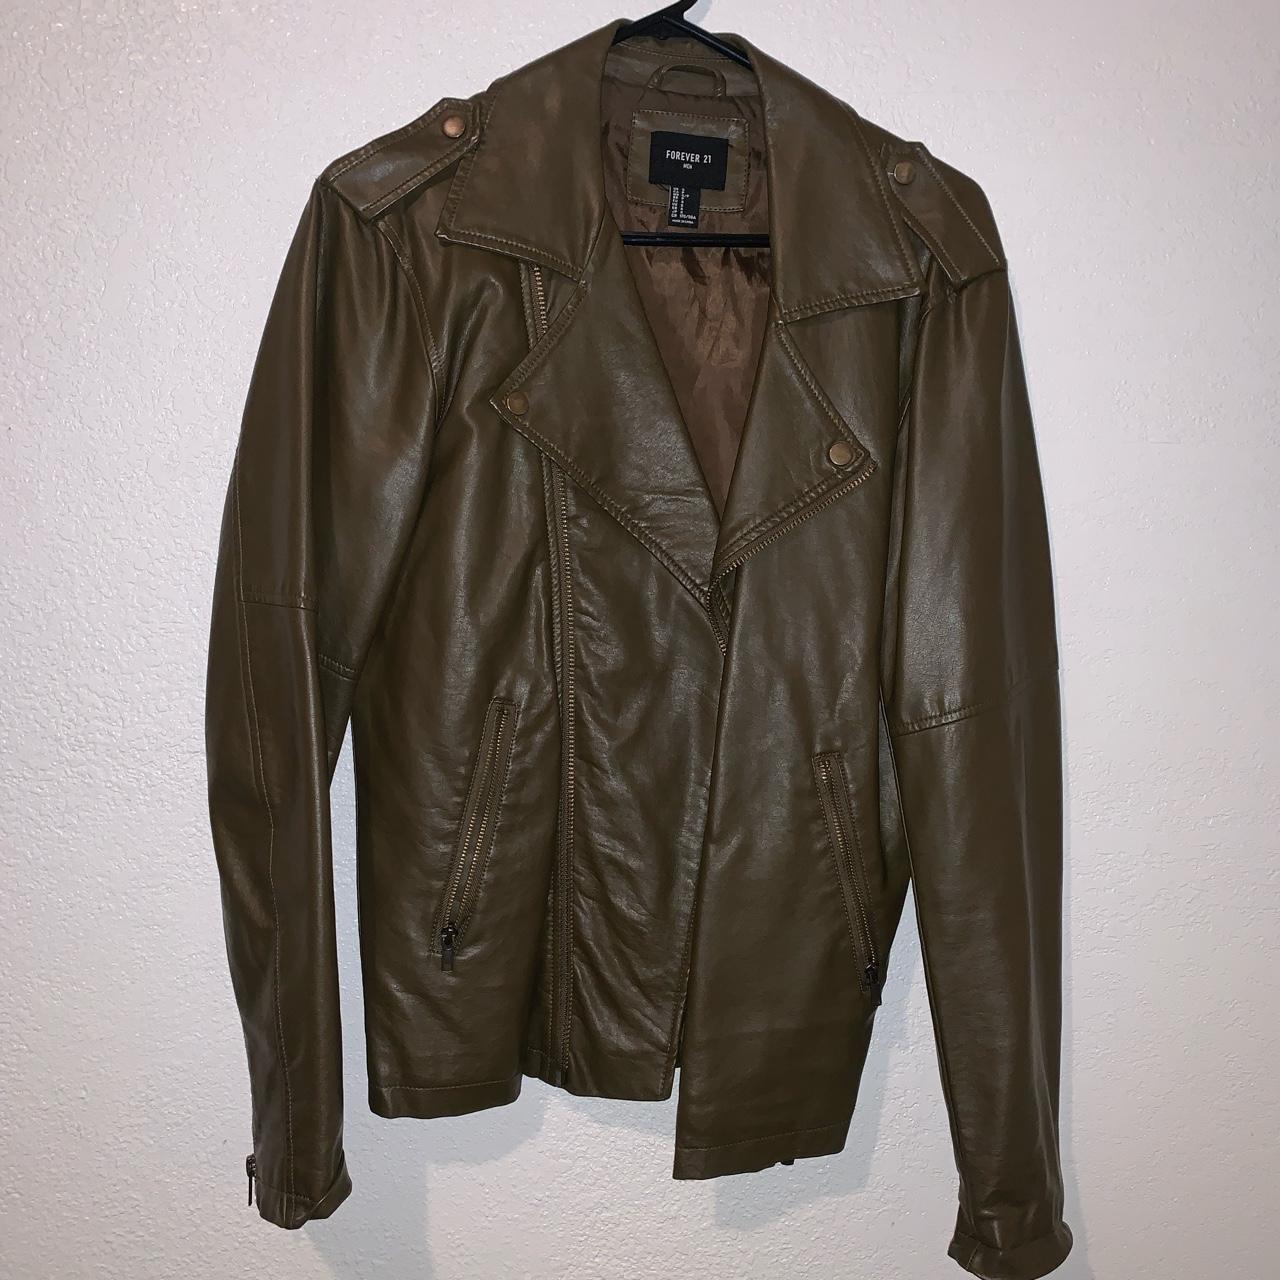 Brown leather jacket 🧥 #Forerver21mens #leatherjacket - Depop